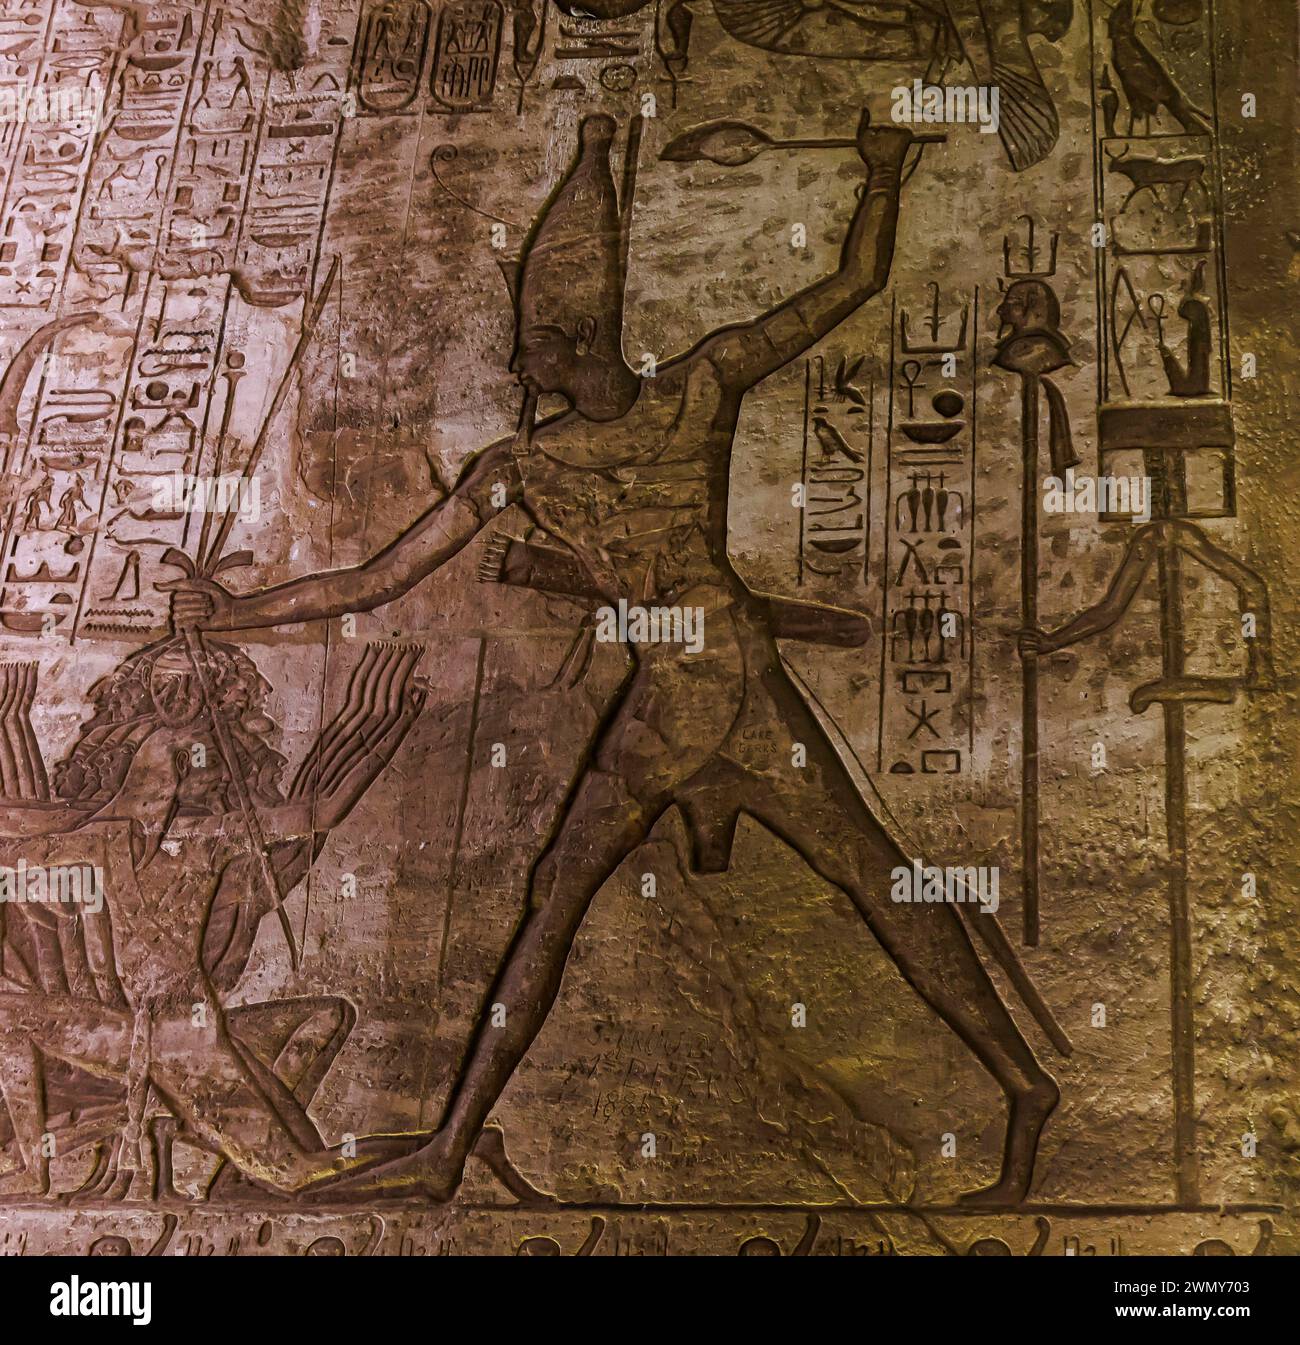 Egitto, Abu Simbel, monumenti nubiani da Abu Simbel a file, patrimonio dell'umanità dell'UNESCO, tempio Ramses II, Ramses II sottomettendo l'ennem Foto Stock